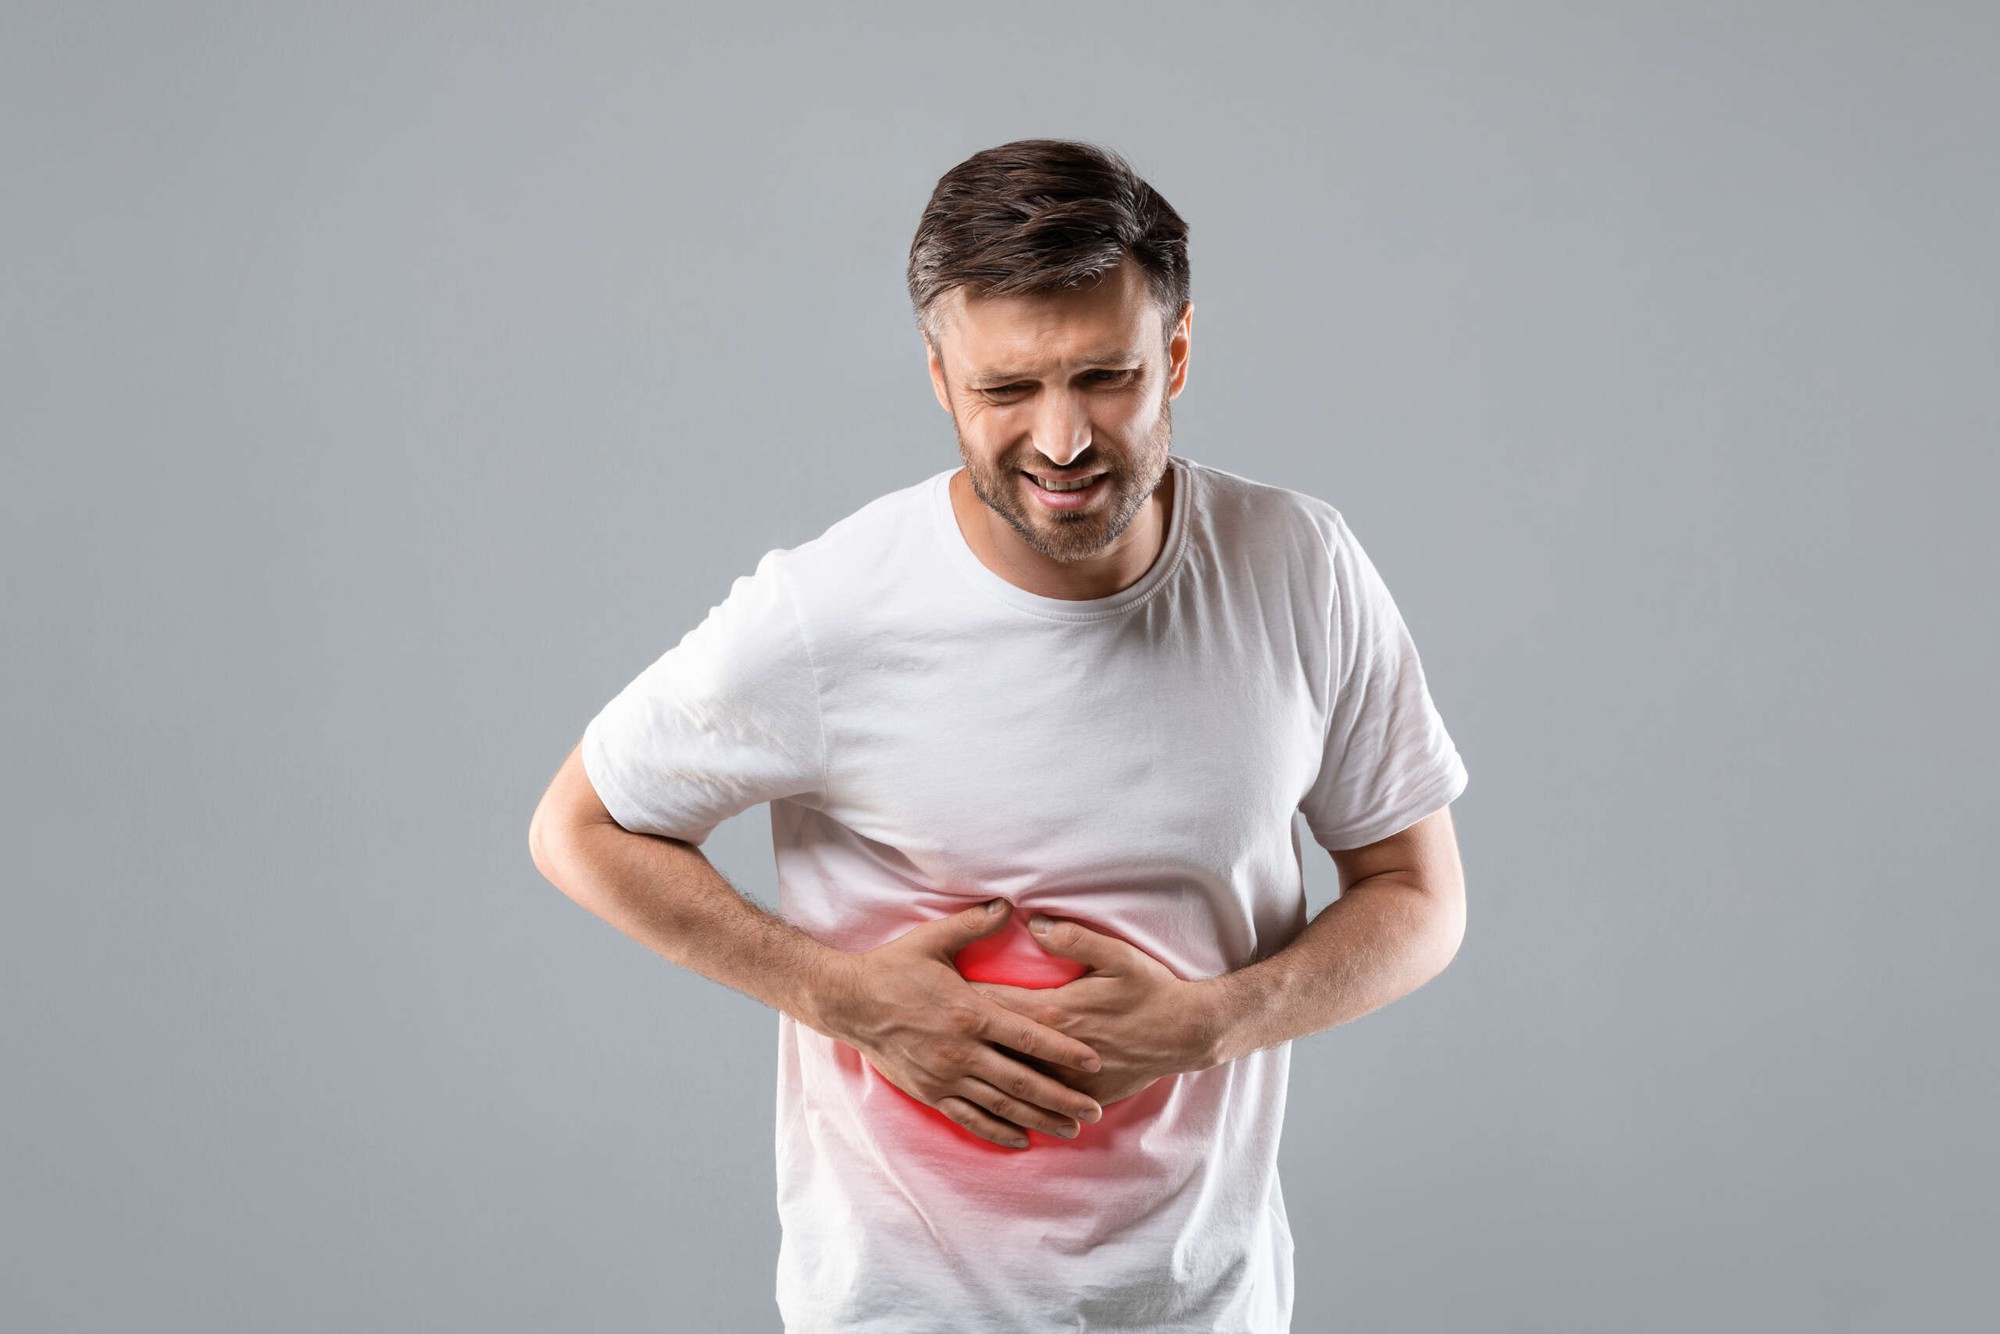 Cơn đau xuất hiện ở 1 vị trí trên cơ thể cảnh báo mỡ thừa tích tụ trong gan, rất dễ bị bỏ qua - ảnh 2